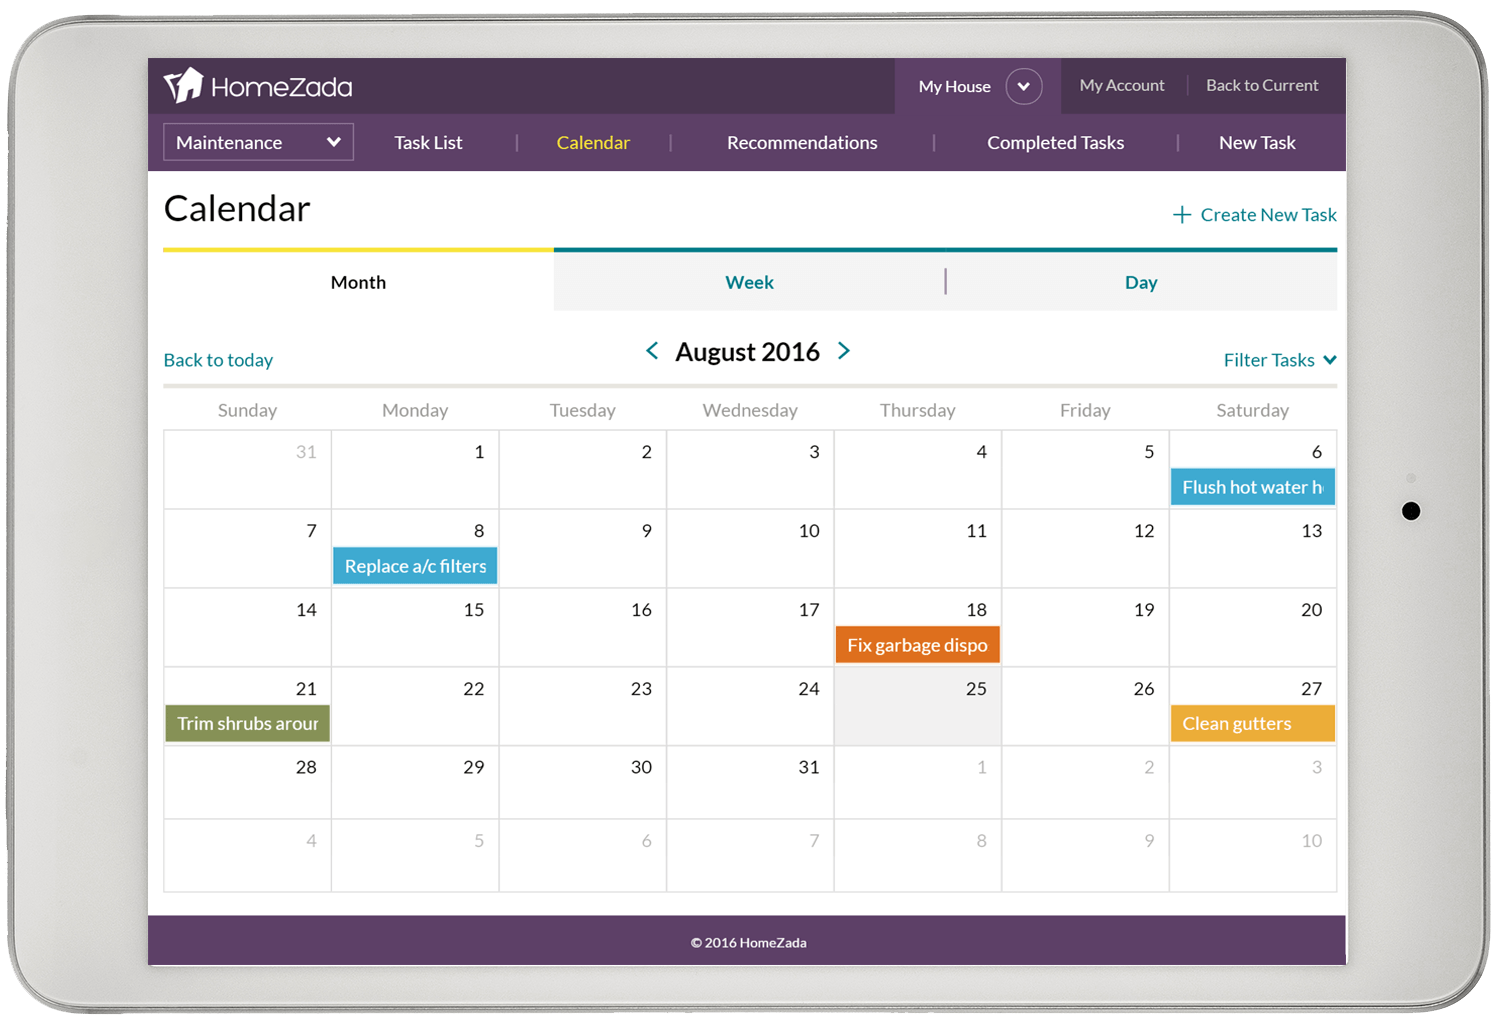 Home builder maintenance schedule and calendar screenshot